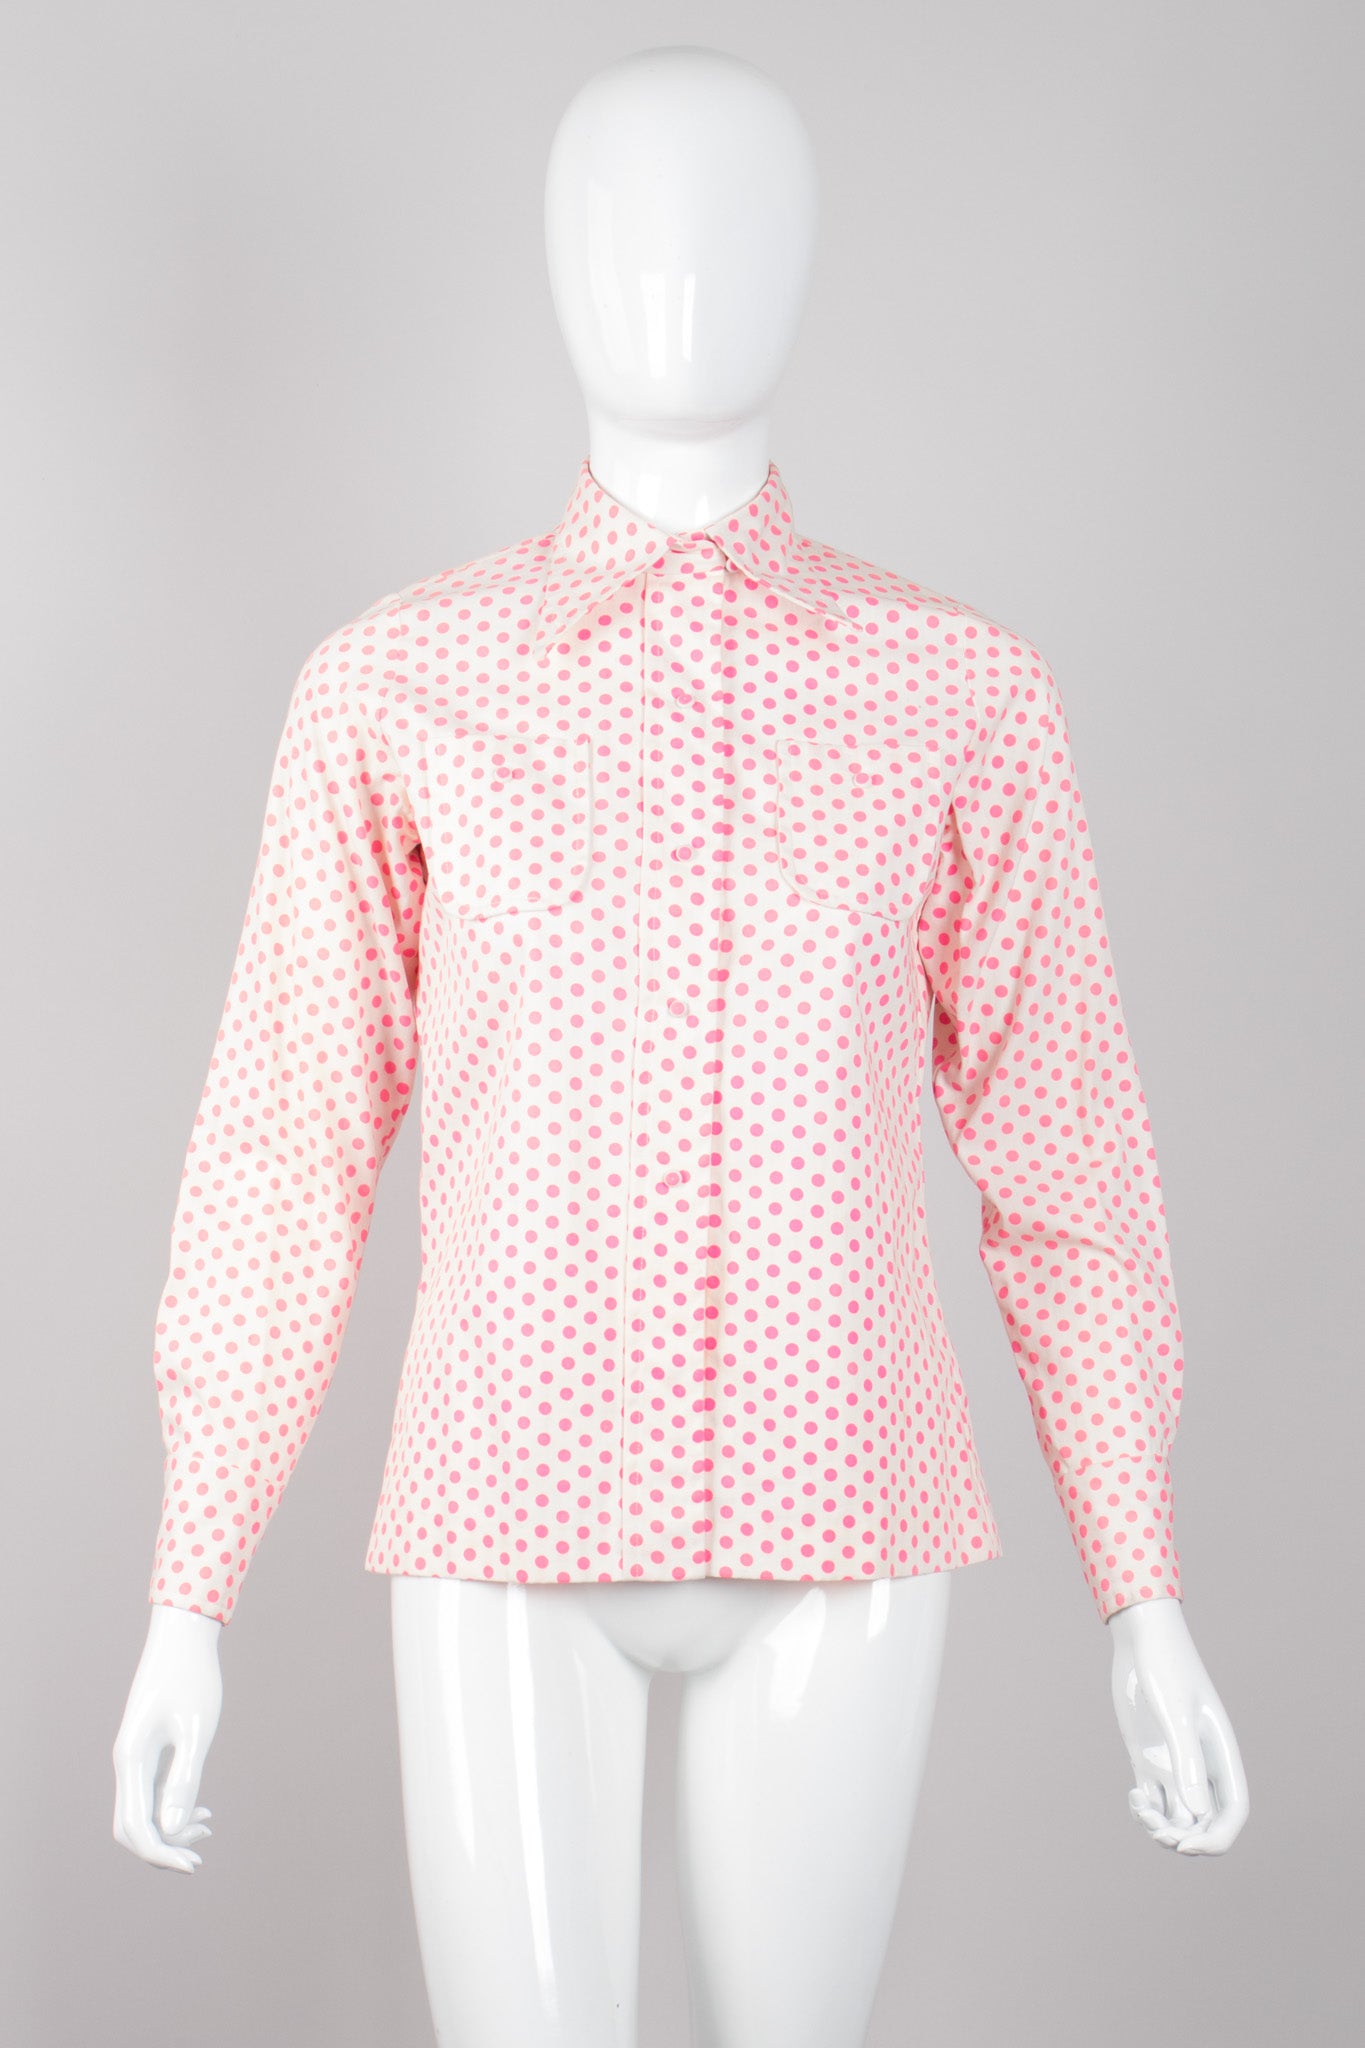 Sarff Zumpano Vintage Appliqué Flowerpot Dot Shirt & Skirt Set